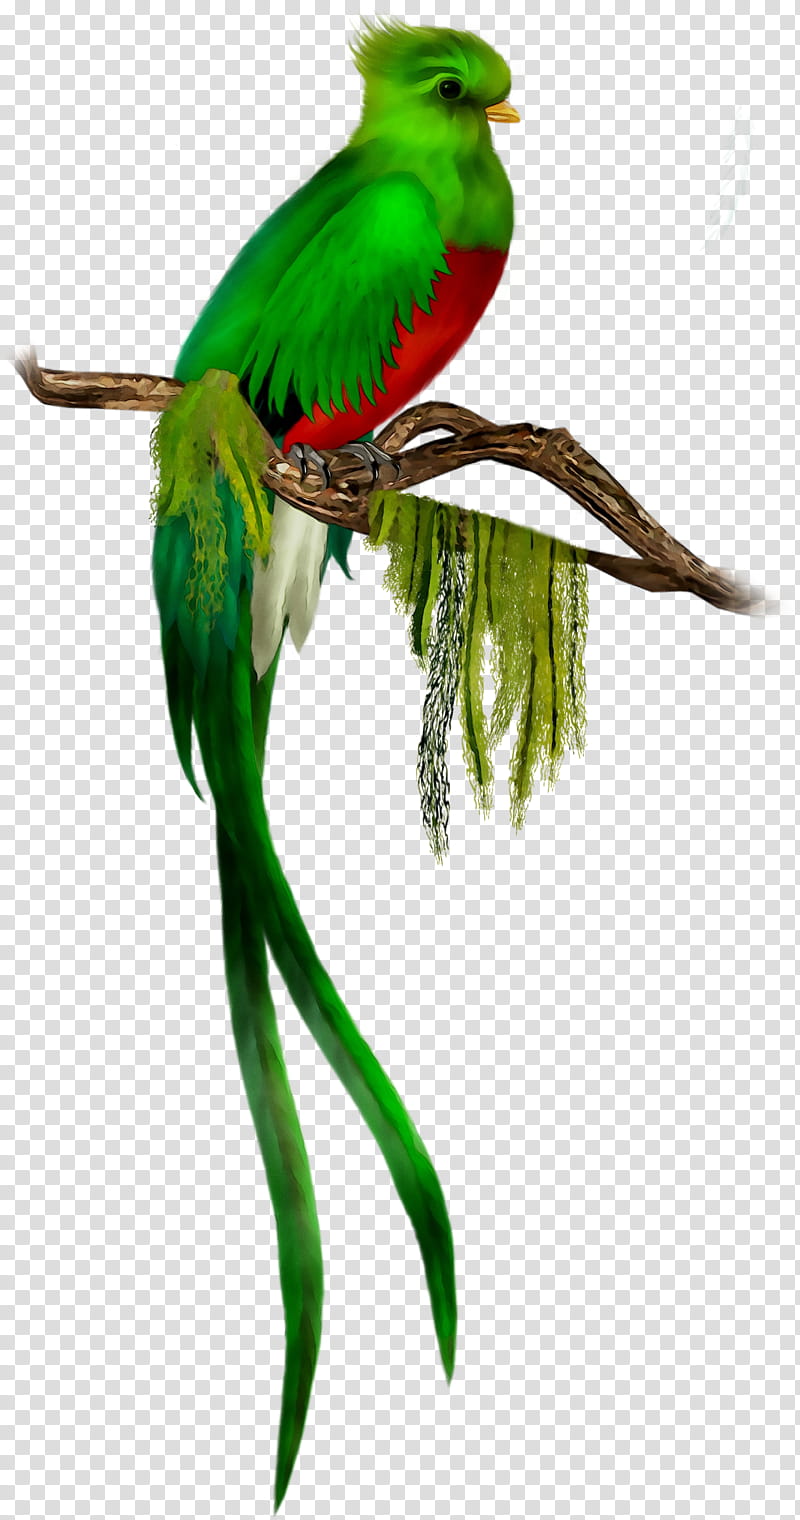 Bird Parrot, Budgerigar, Resplendent Quetzal, Macaw, Feather, Parakeet, Tail, Species transparent background PNG clipart